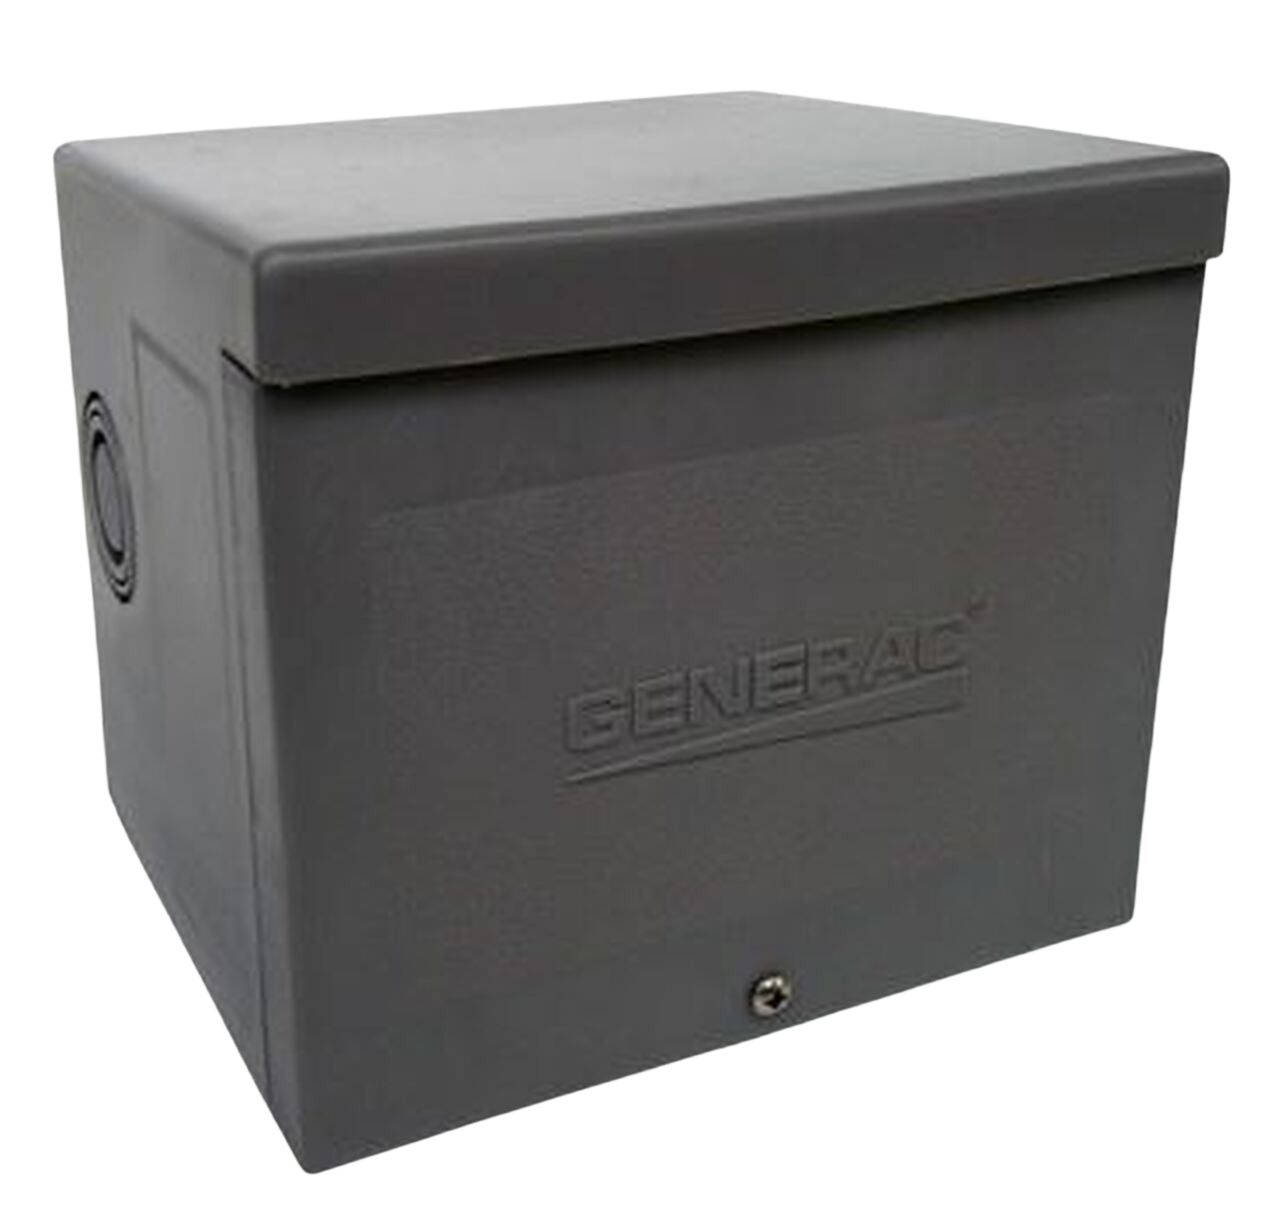 Generac, Generac 6338 50 AMP (50A) CS6365 Raintight Power Inlet Box New